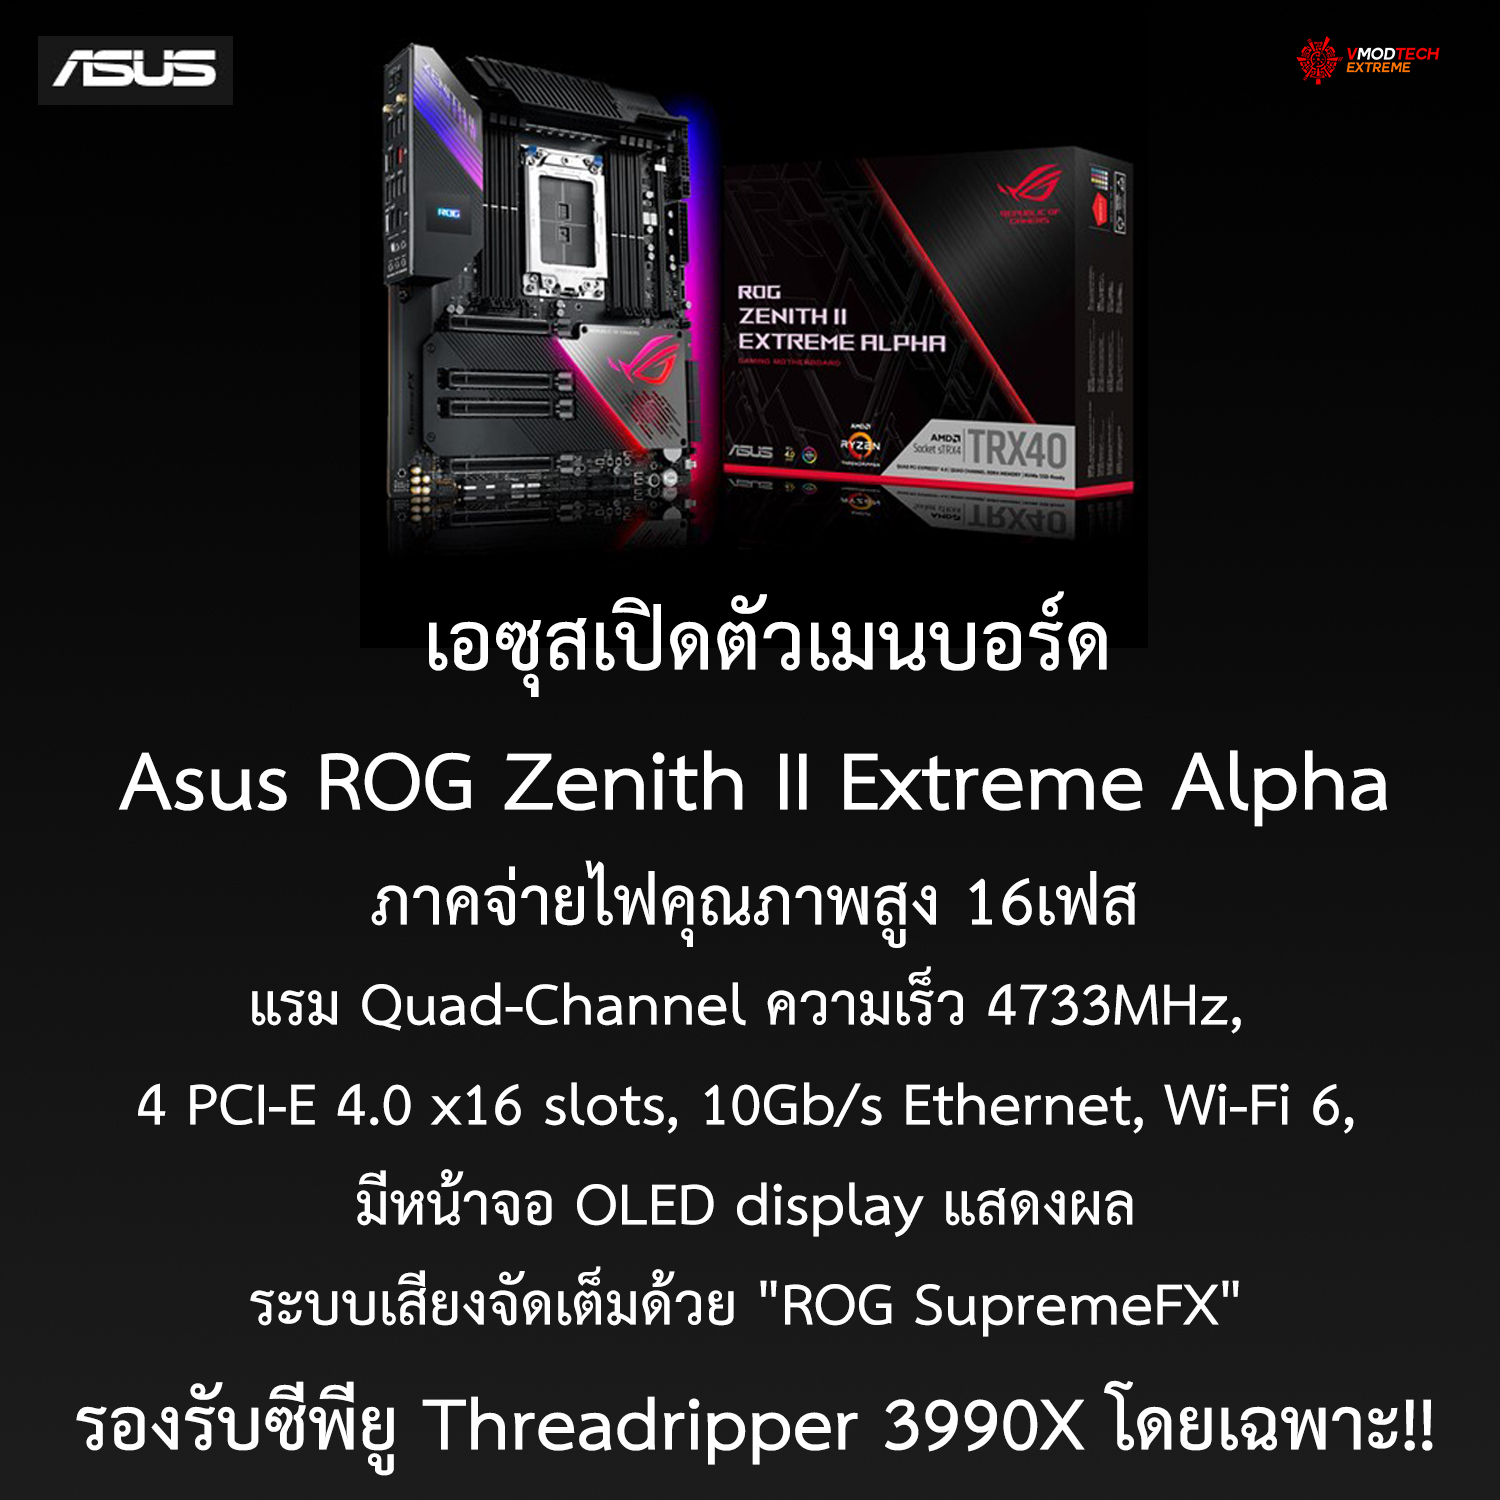 เอซุสเปิดตัว Asus ROG Zenith II Extreme Alpha ที่ออกแบบมารองรับซีพียูรุ่นท็อปสุดอย่าง Threadripper 3990X โดยเฉพาะ!!